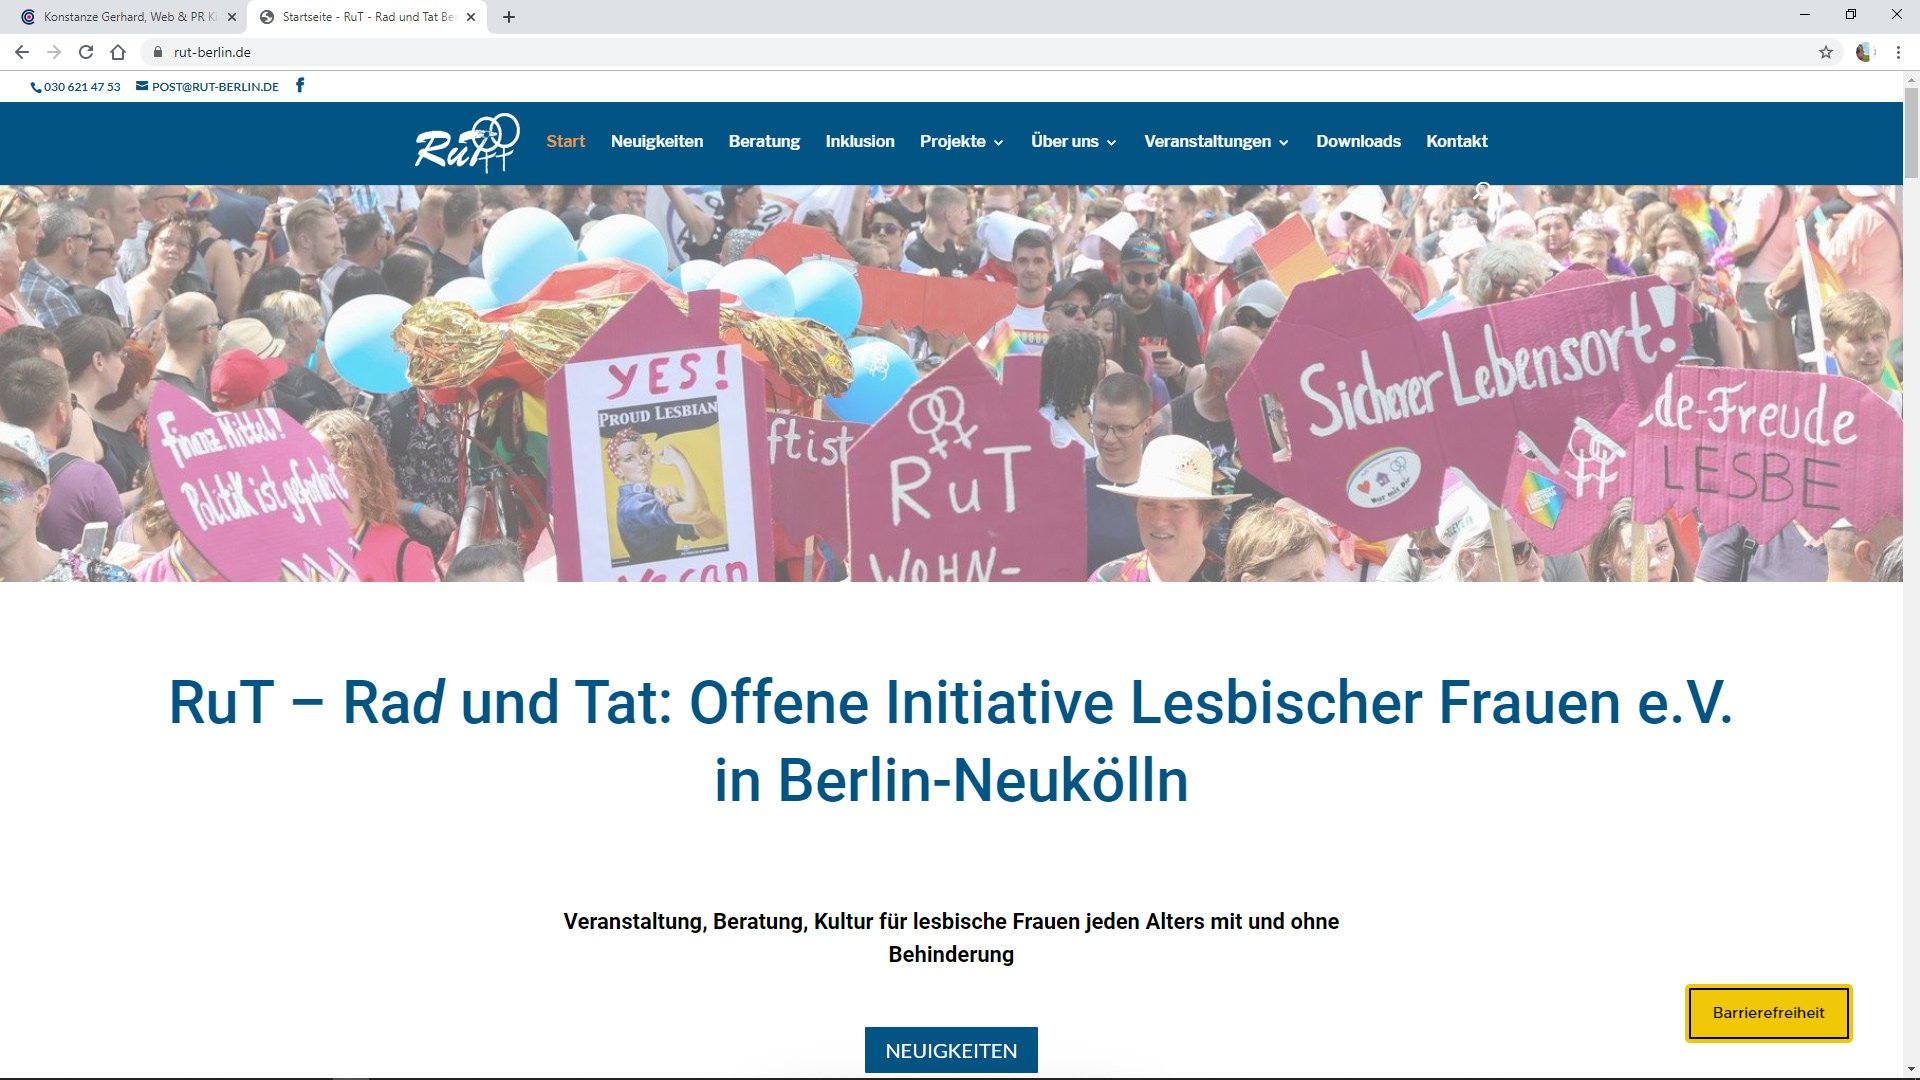 RuT Berlin - Rad und Tat e.V. - Offene Initiative Lesbischer Frauen - Veranstaltung, Beratung, Kultur